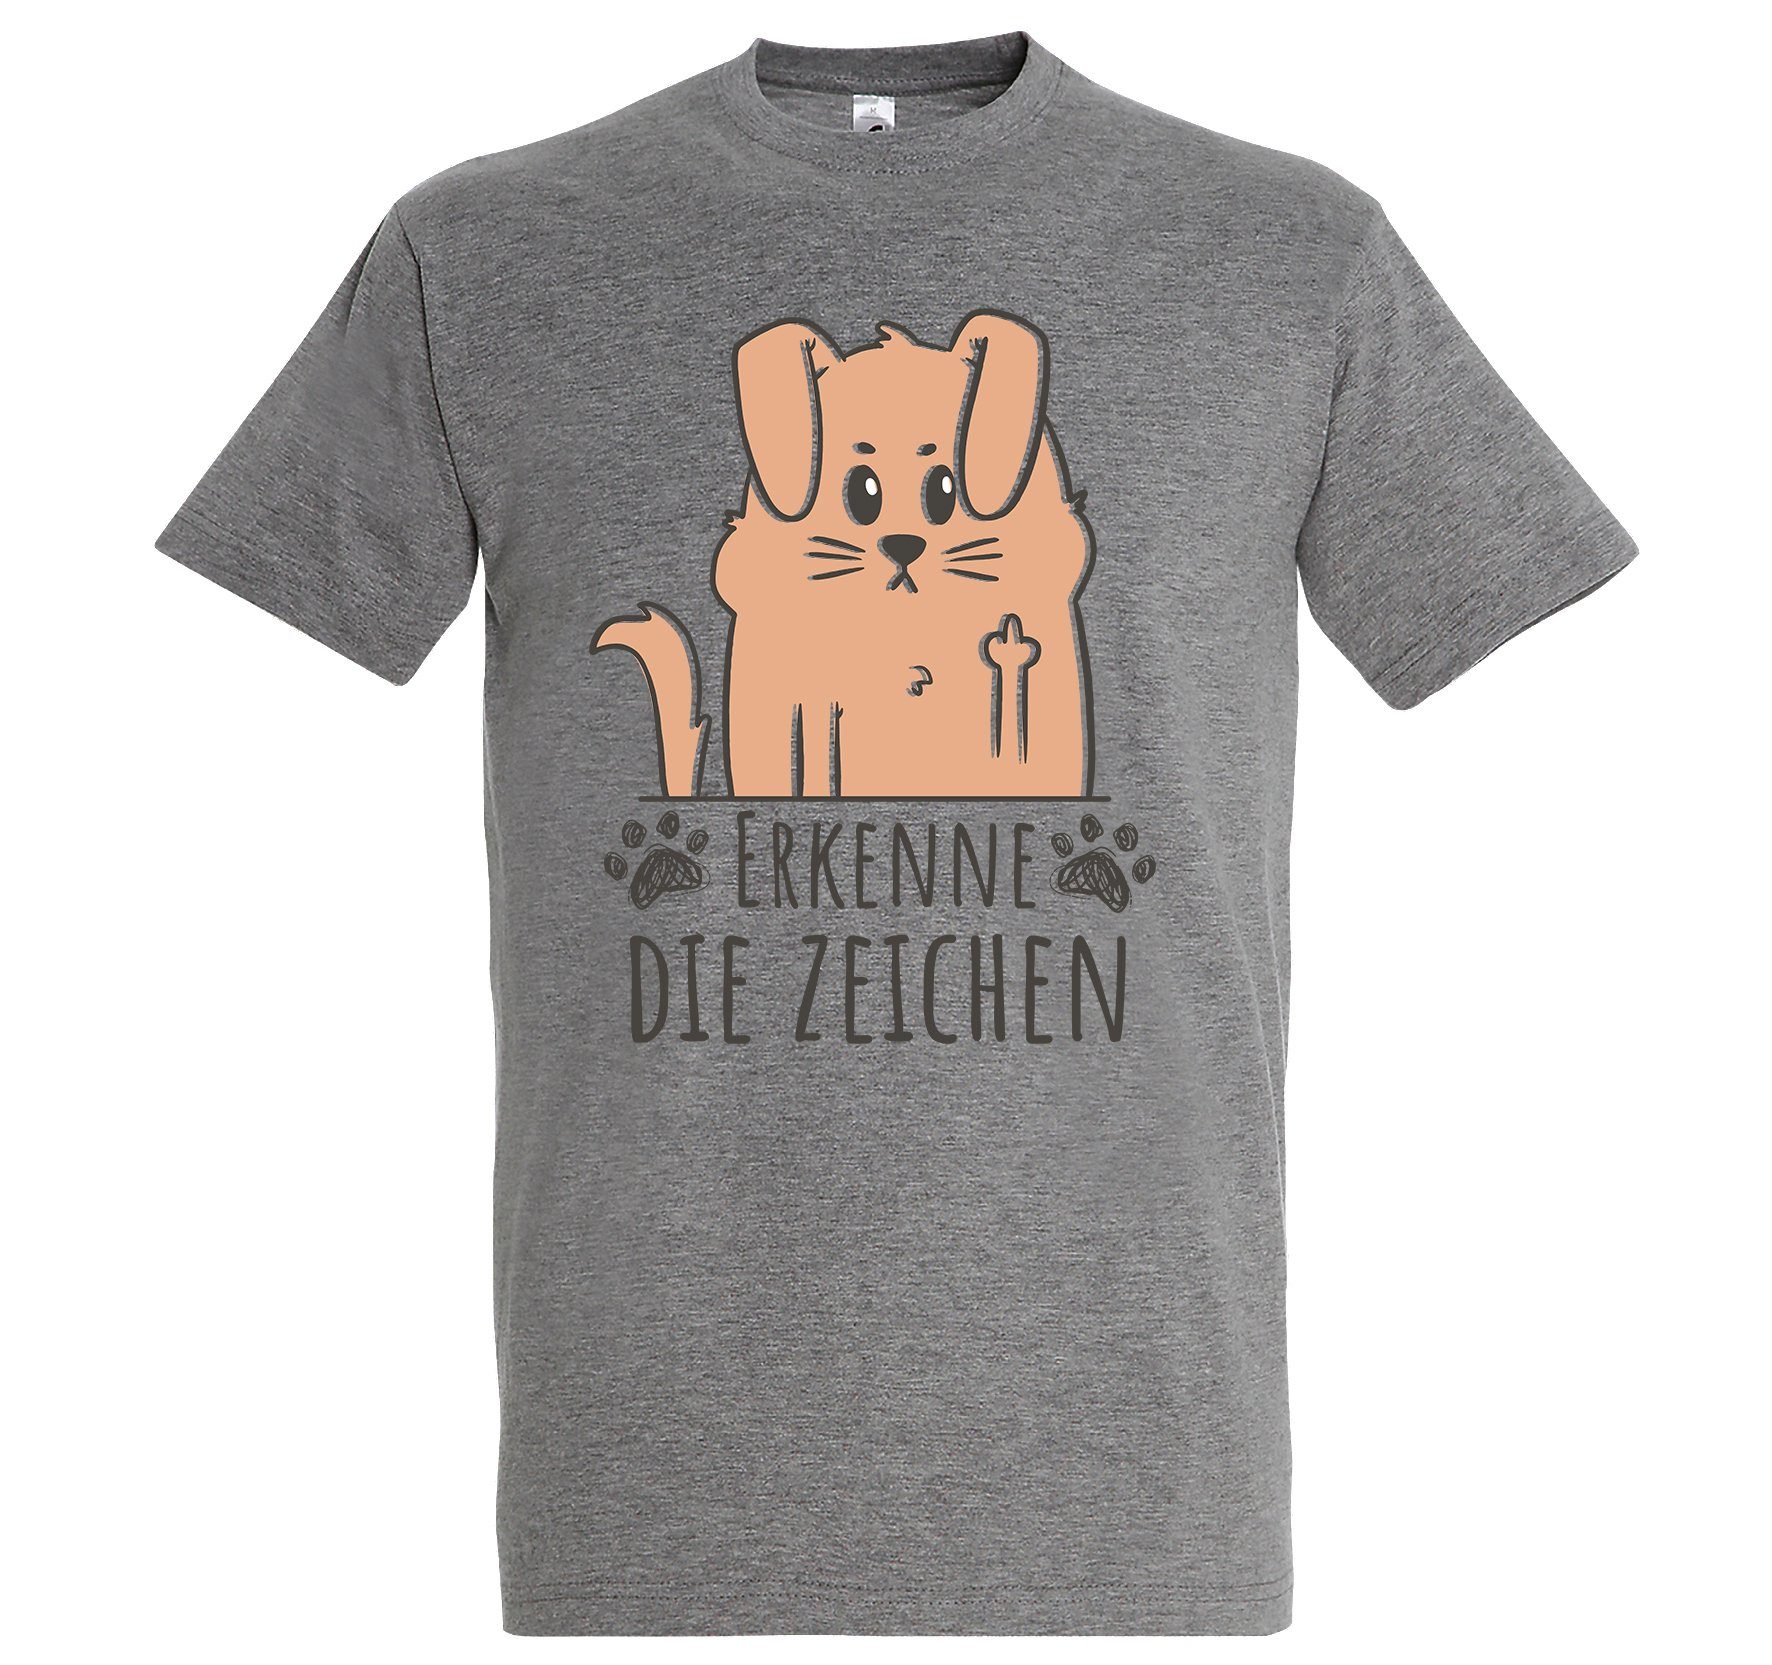 Youth Designz Print-Shirt lustigem Herren Erkenne Zeichen die Aufdruck Spruch mit T-Shirt Grau